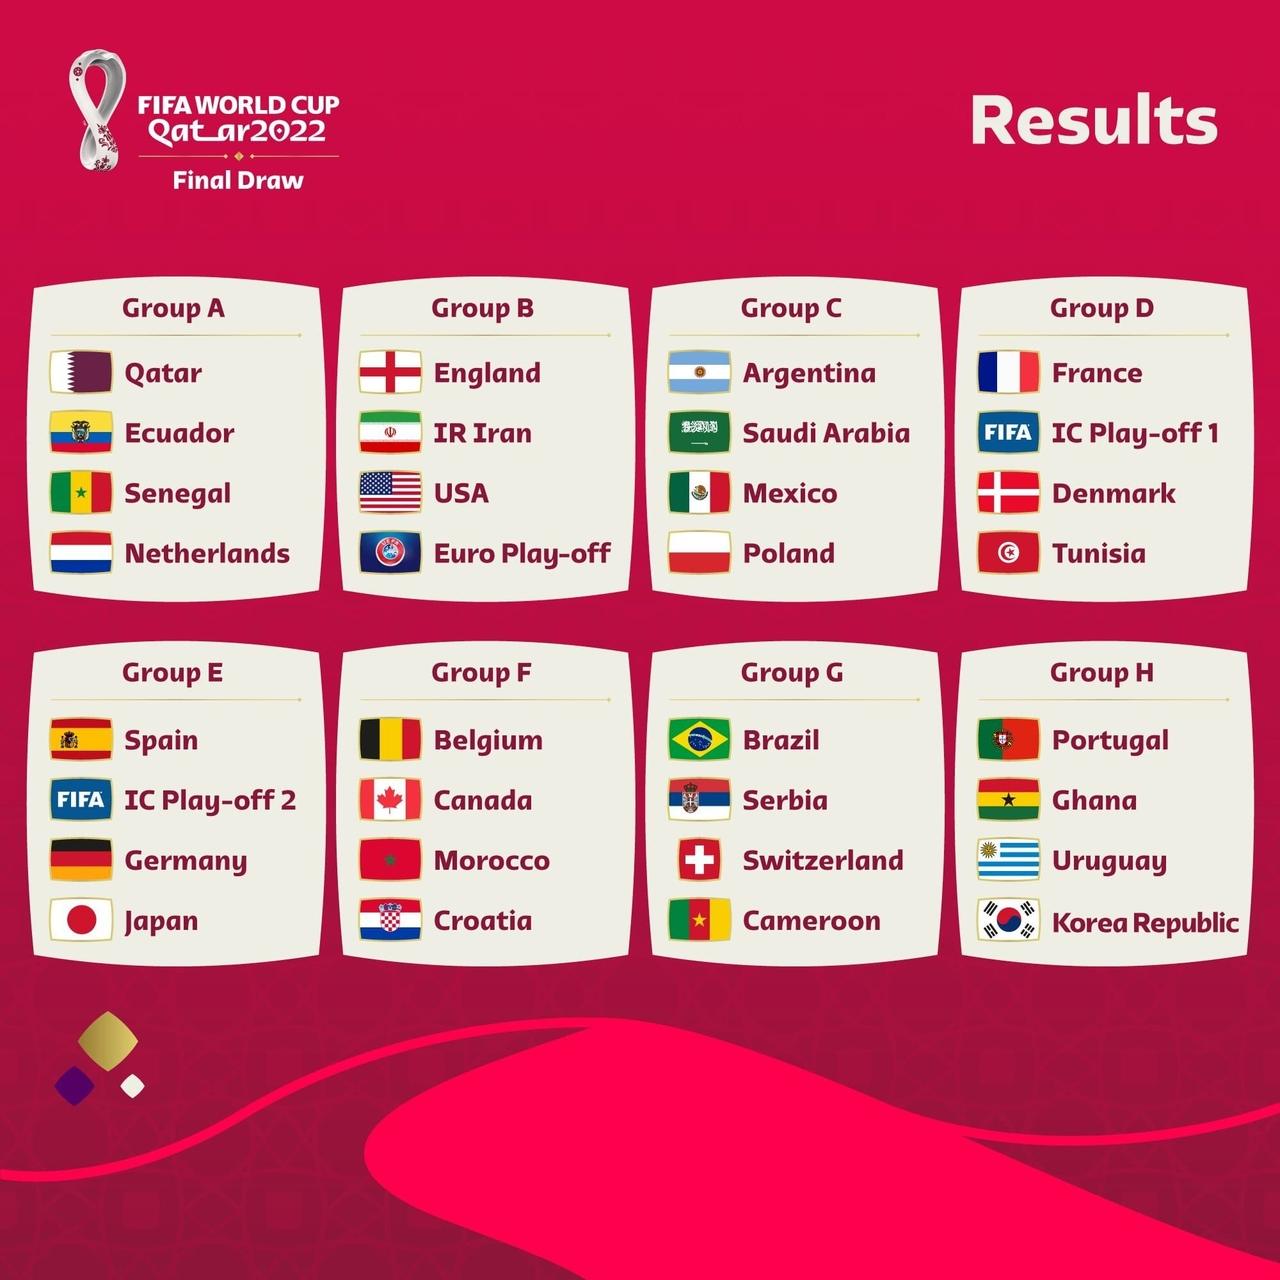 Copa do Mundo 2022: países participantes - Brasil Escola